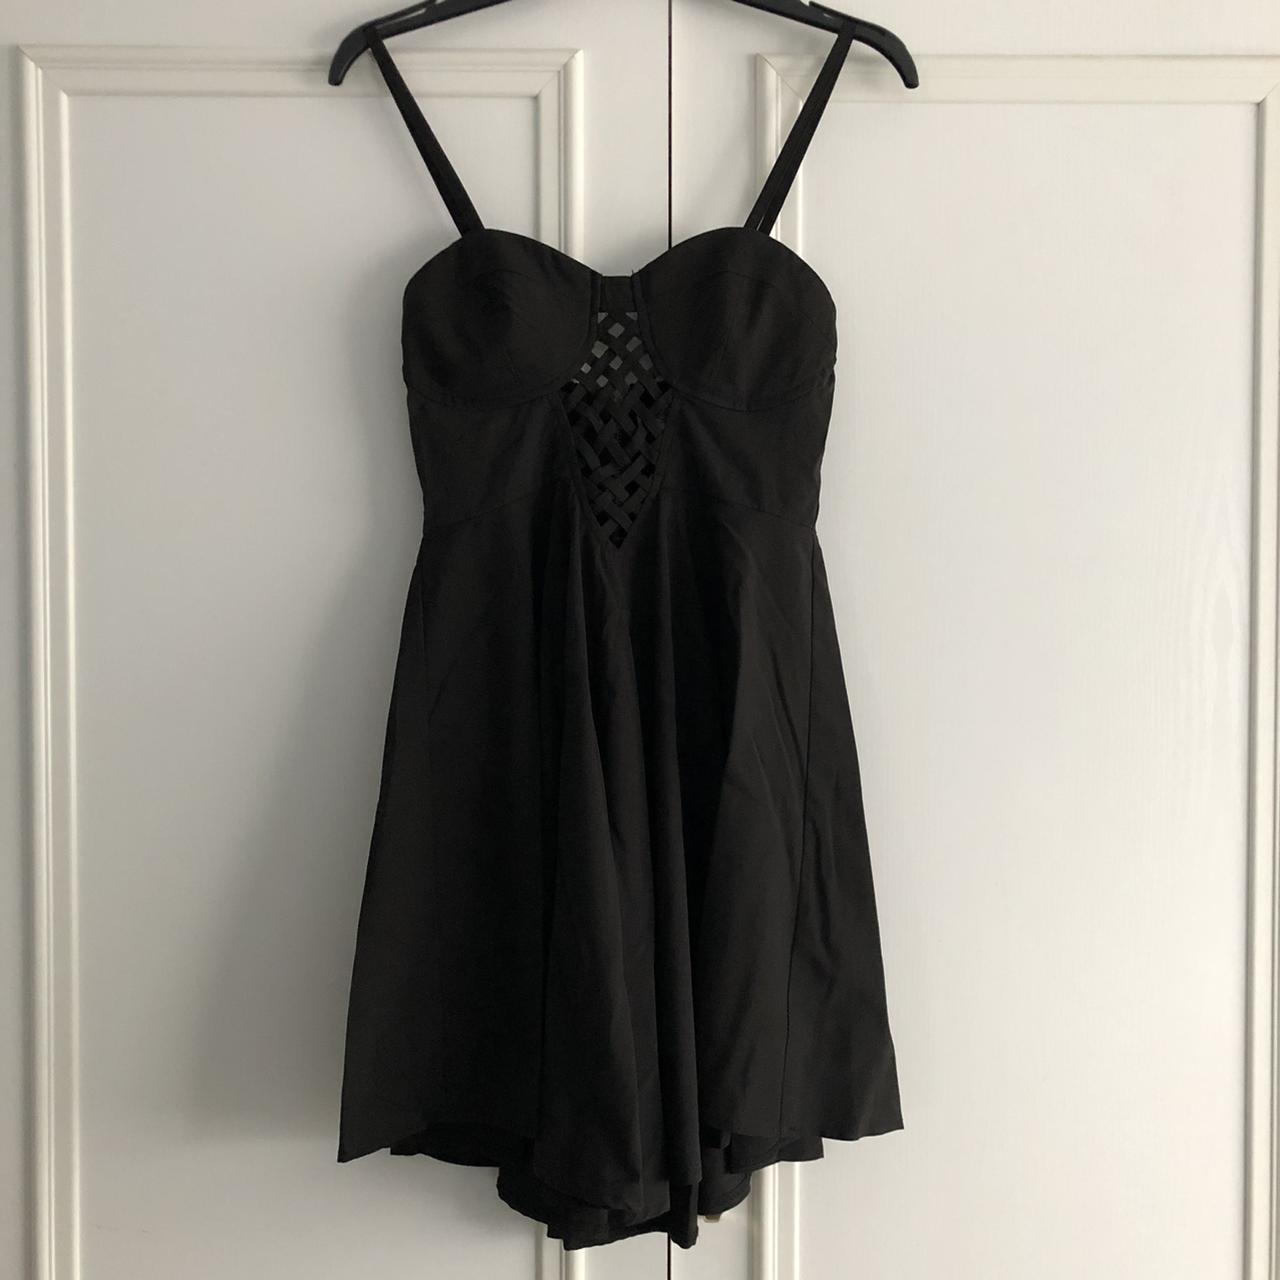 New Look Women's Black Dress | Depop